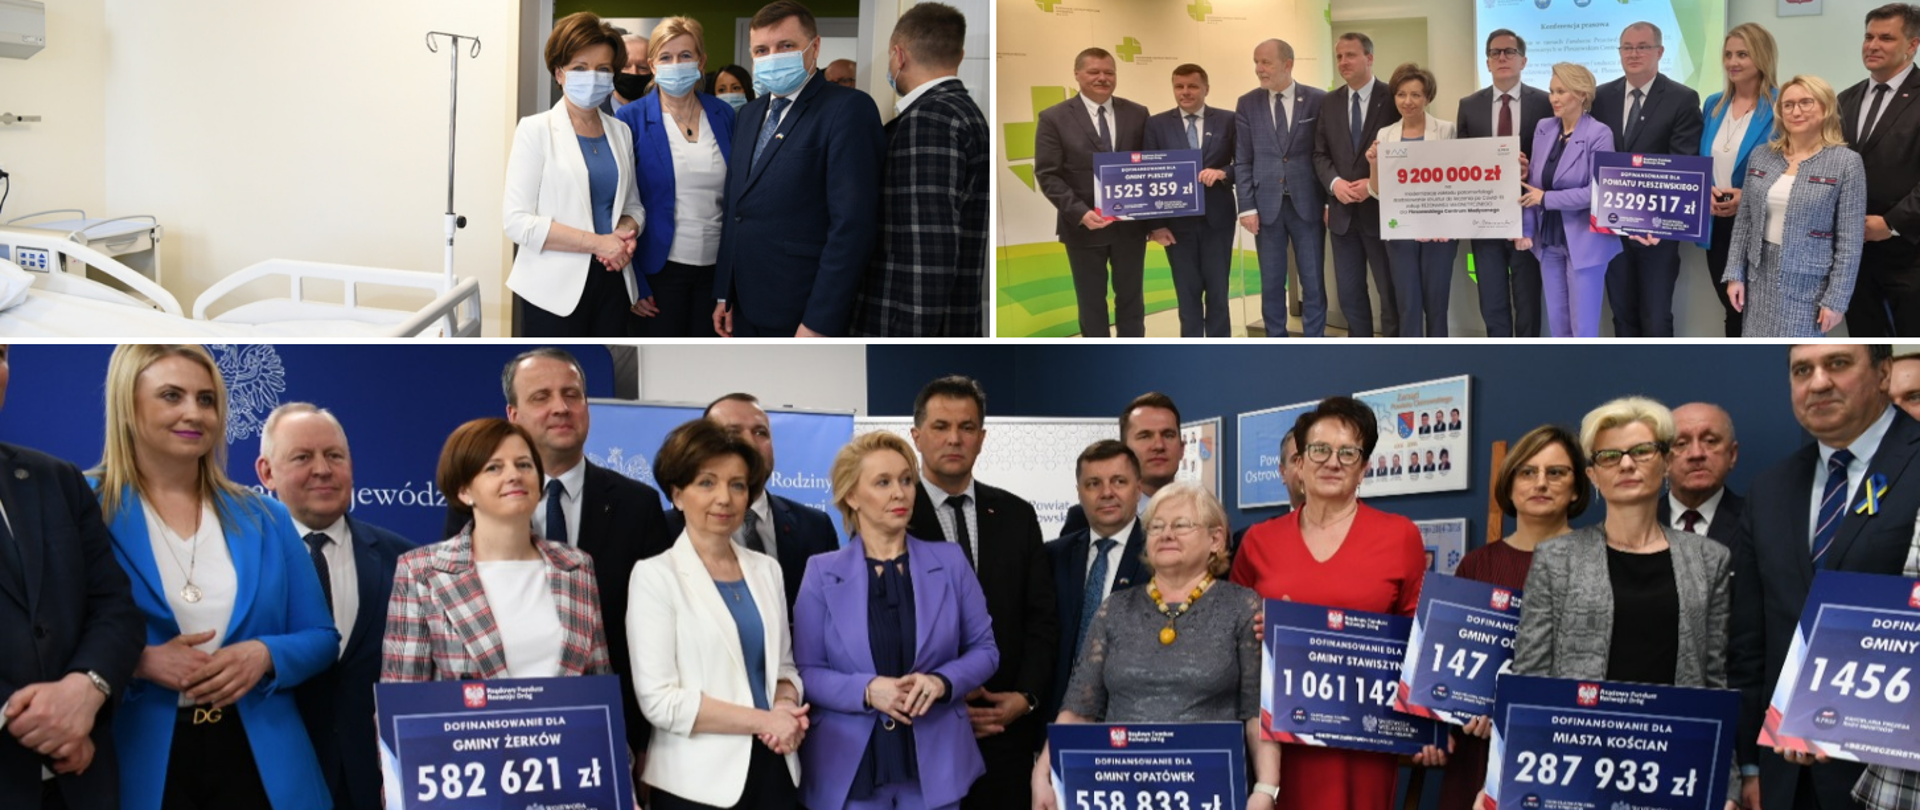 Kolaż zdjęć z wizyty minister Maląg w Wielkopolsce